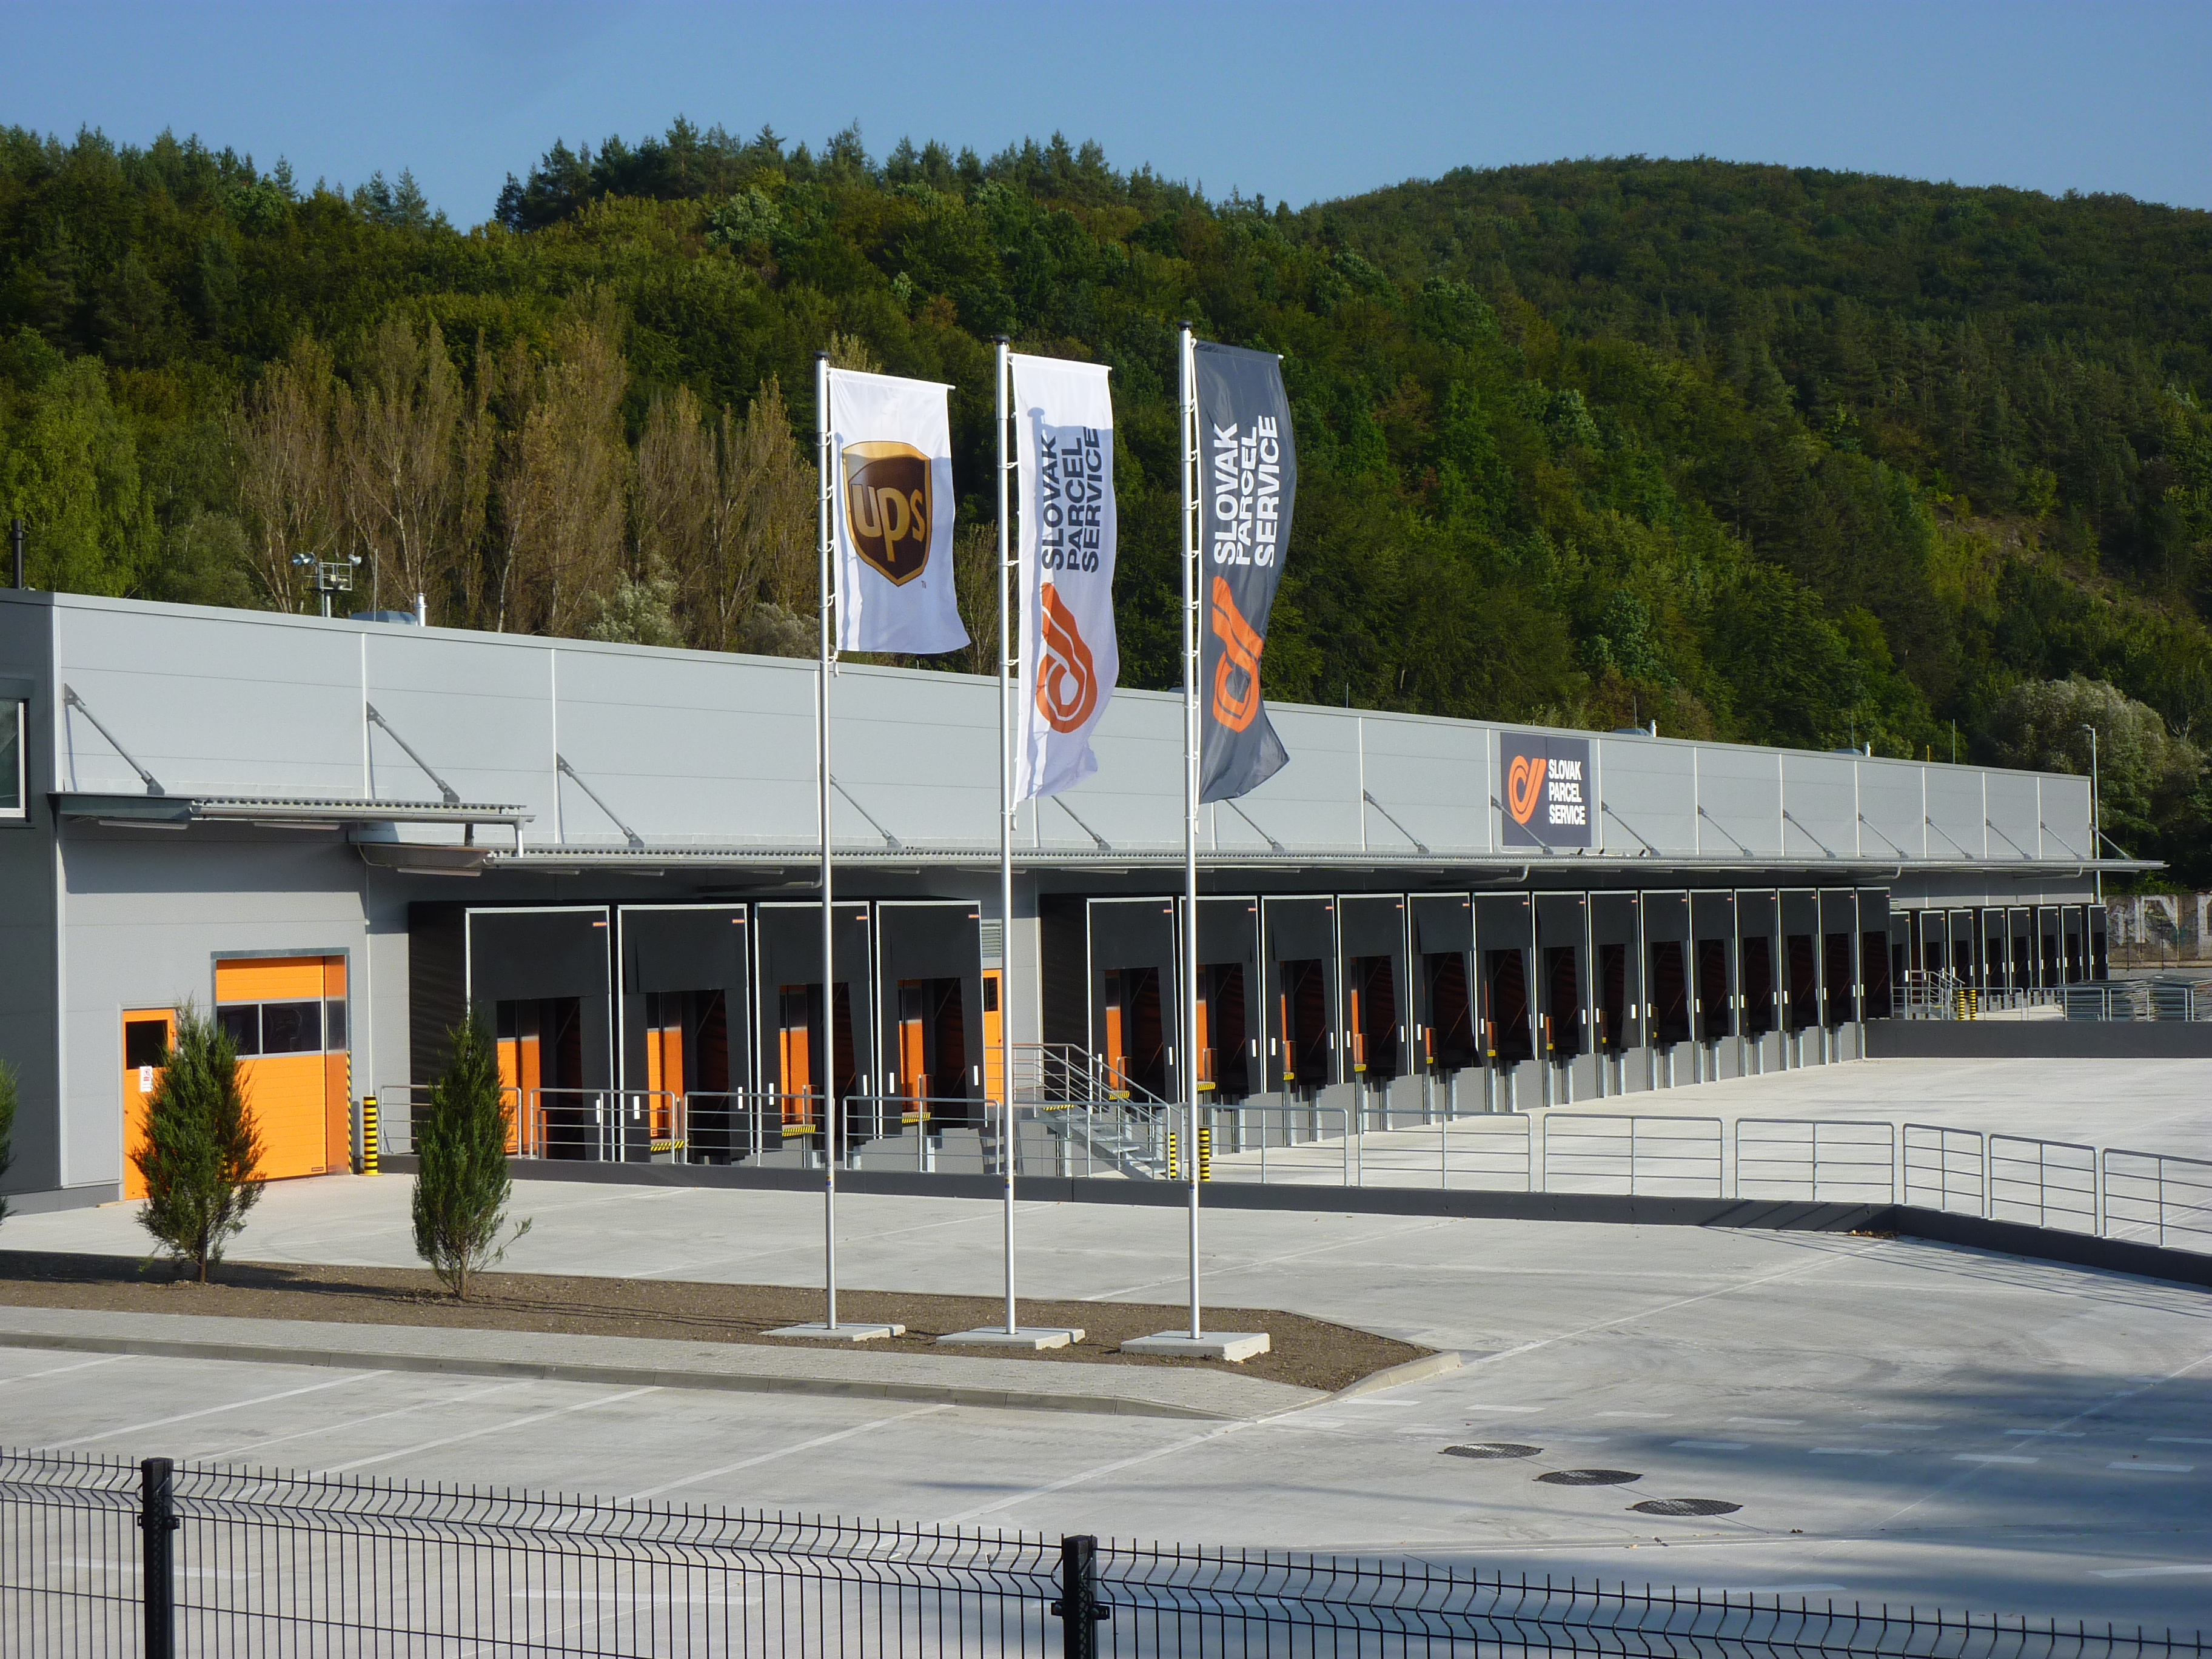 Distribučné centrum SPS Banská Bystrica / logistické areály, sklady - Bygningskonstruksjon